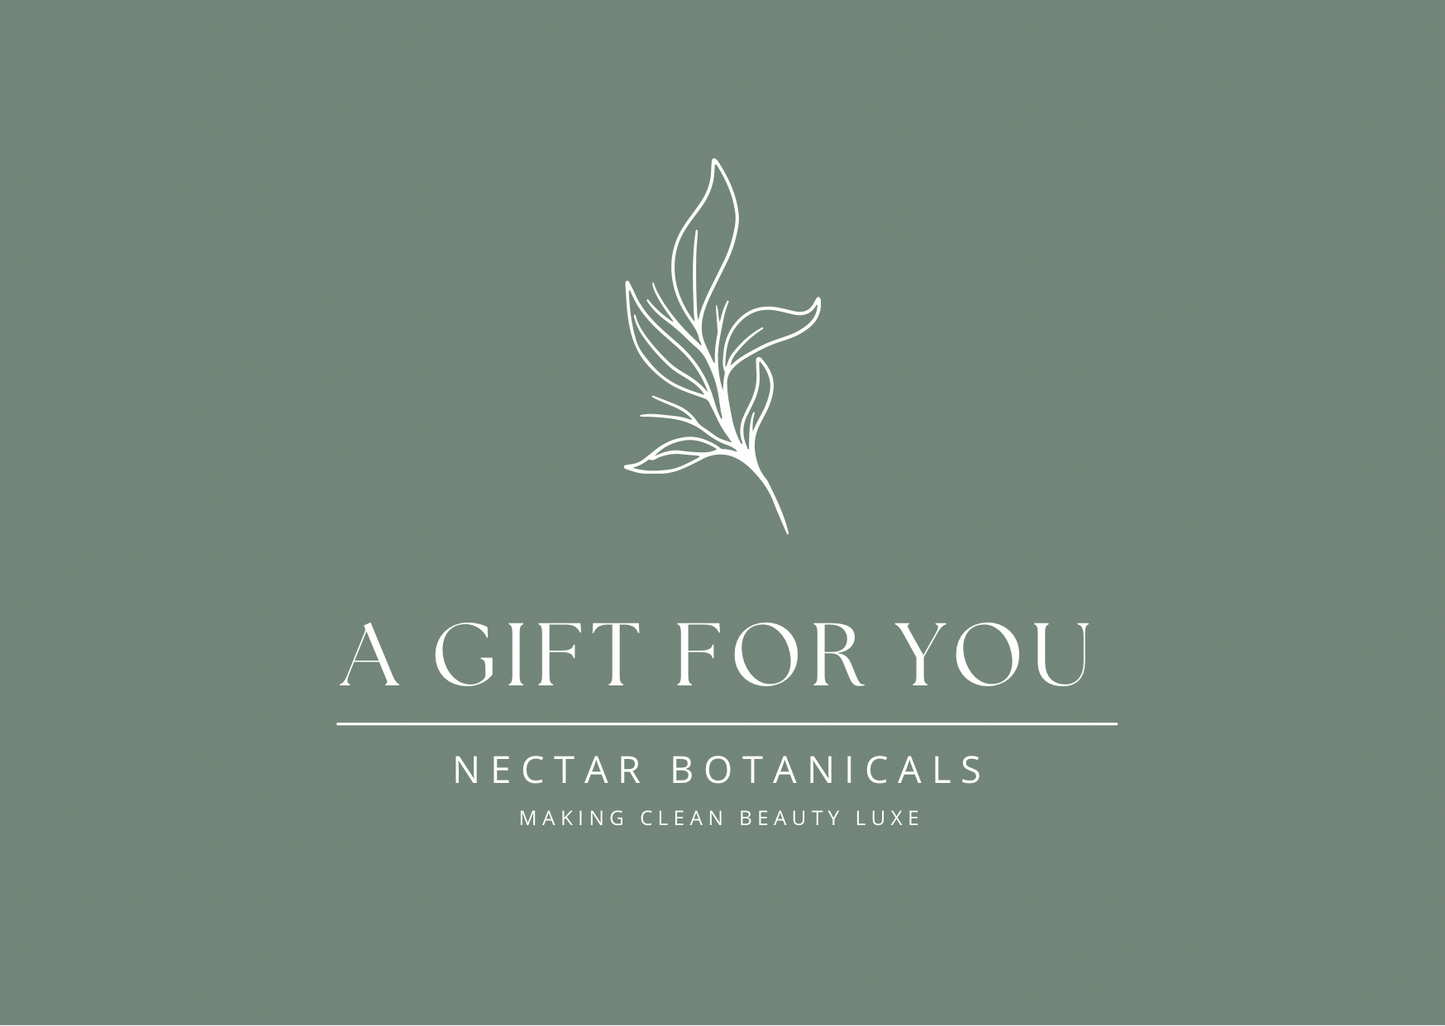 Nectar Botanicals Gift Voucher